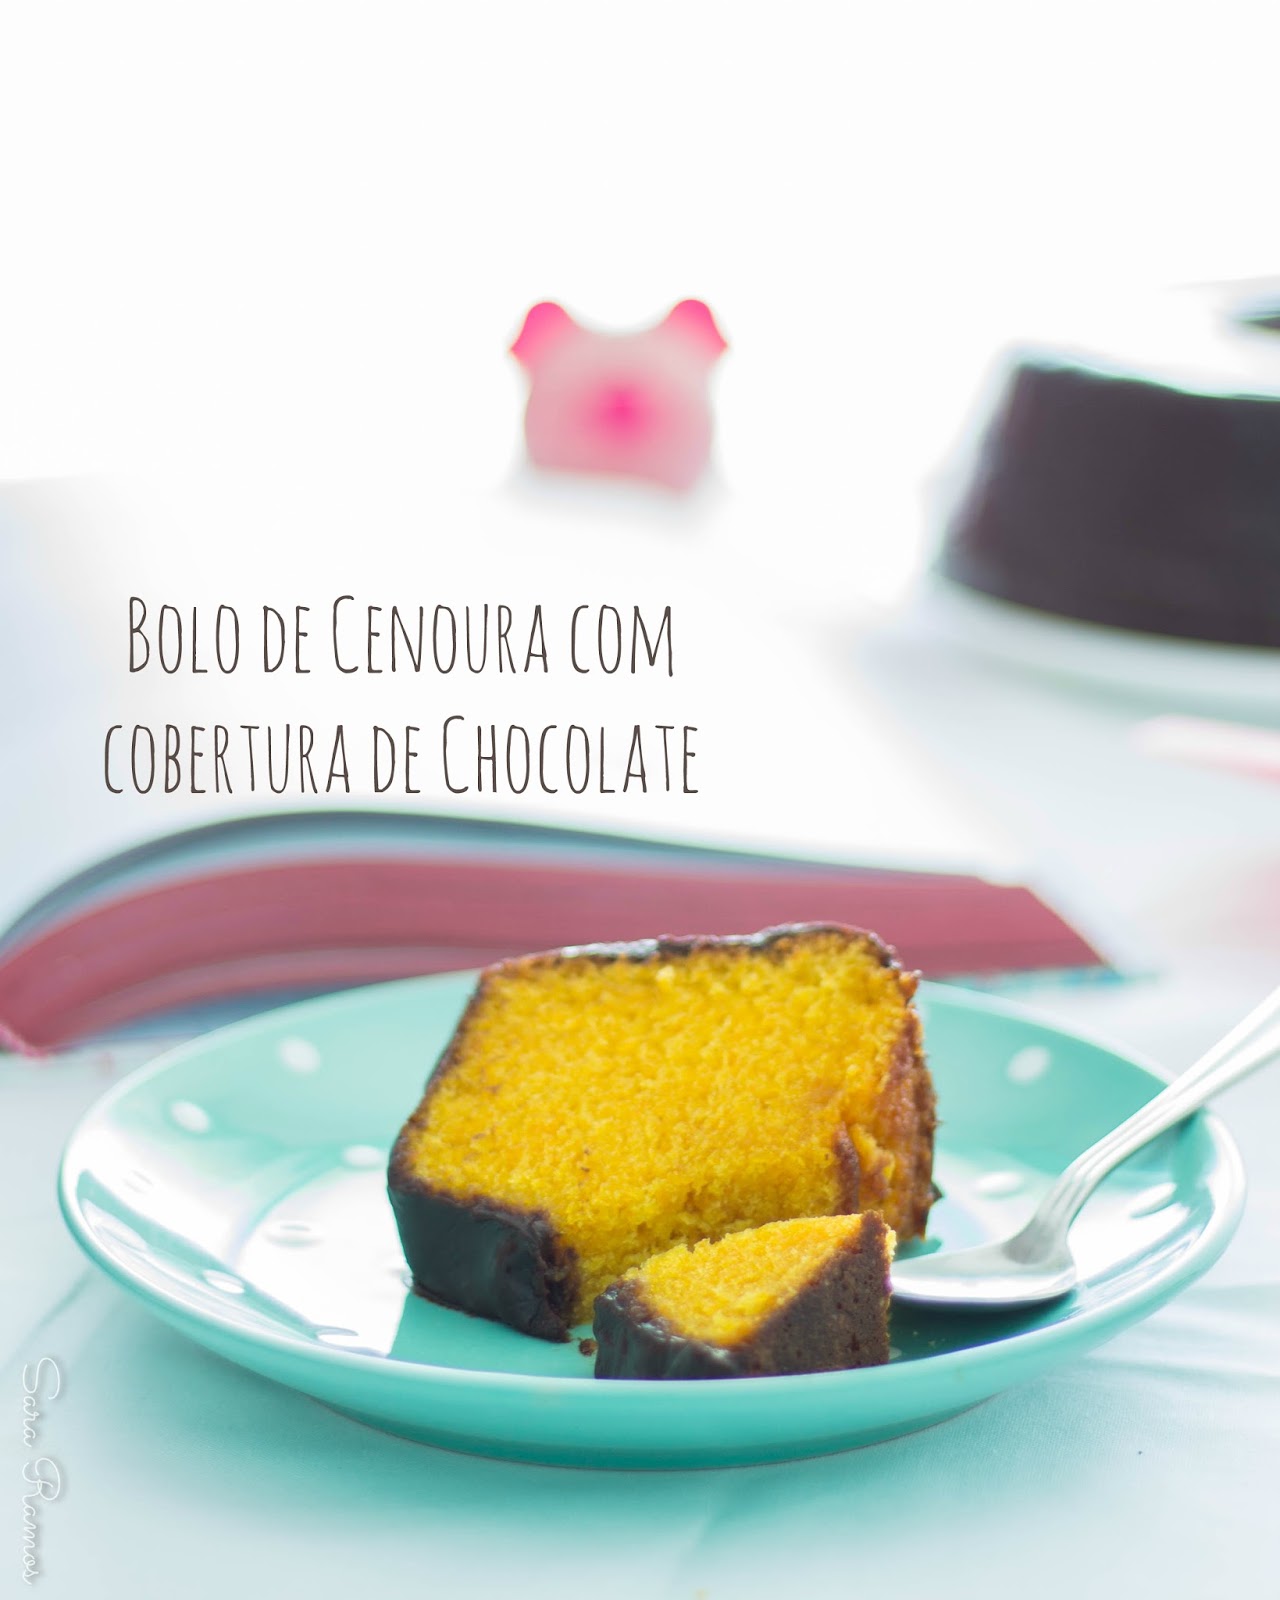 Bolo de Cenoura com Chocolate...por uma vida mais doce e histórias da infância!